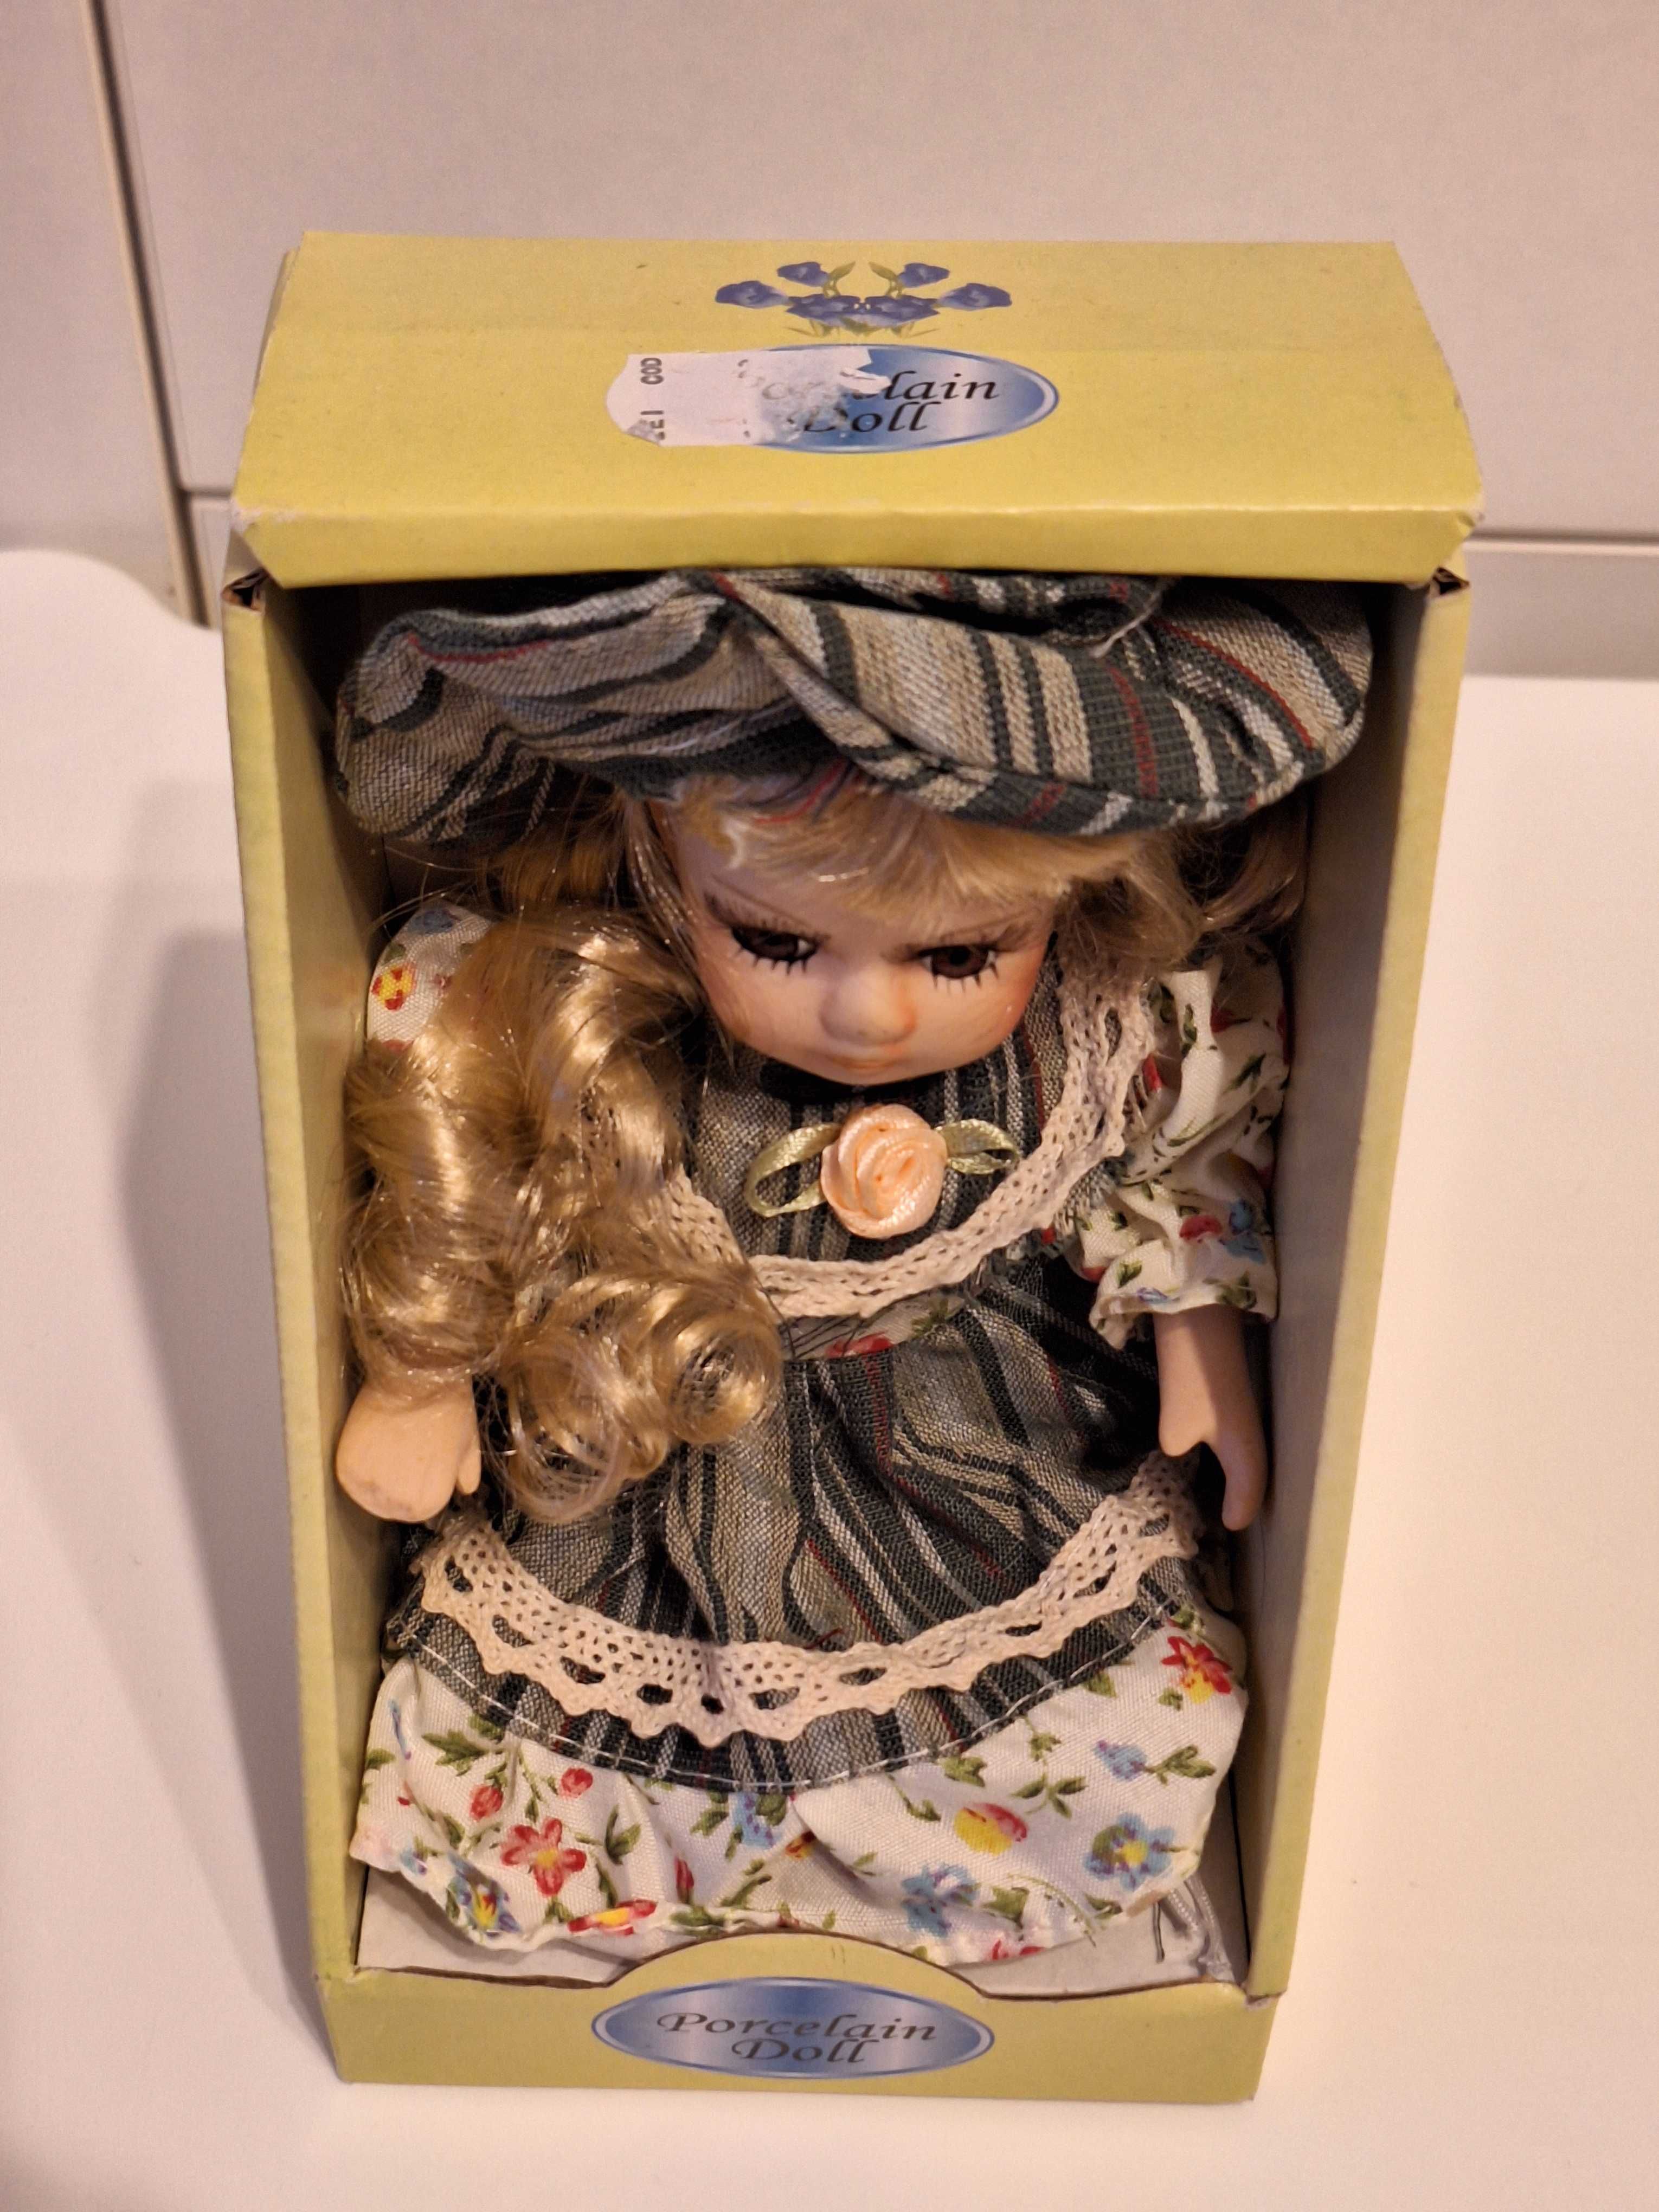 Papusa de portelan - Porcelain Doll, 25cm, Par Blond